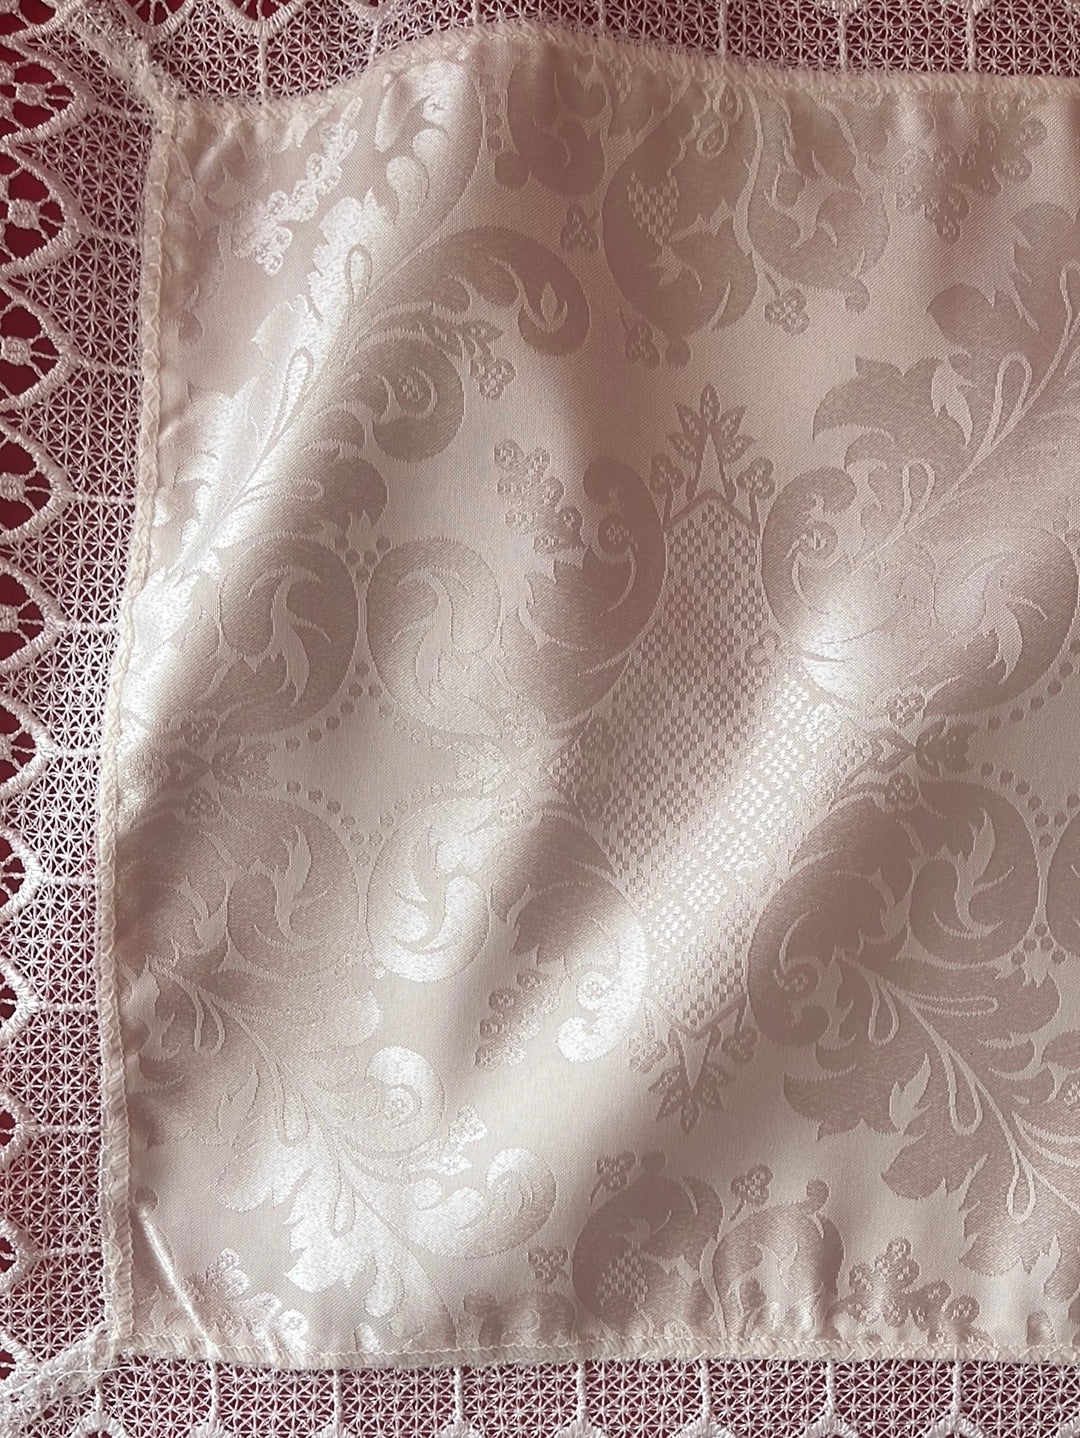 DEA Luxury Italian Linens Place Mats and Center Cloth in "Portofino" Pattern